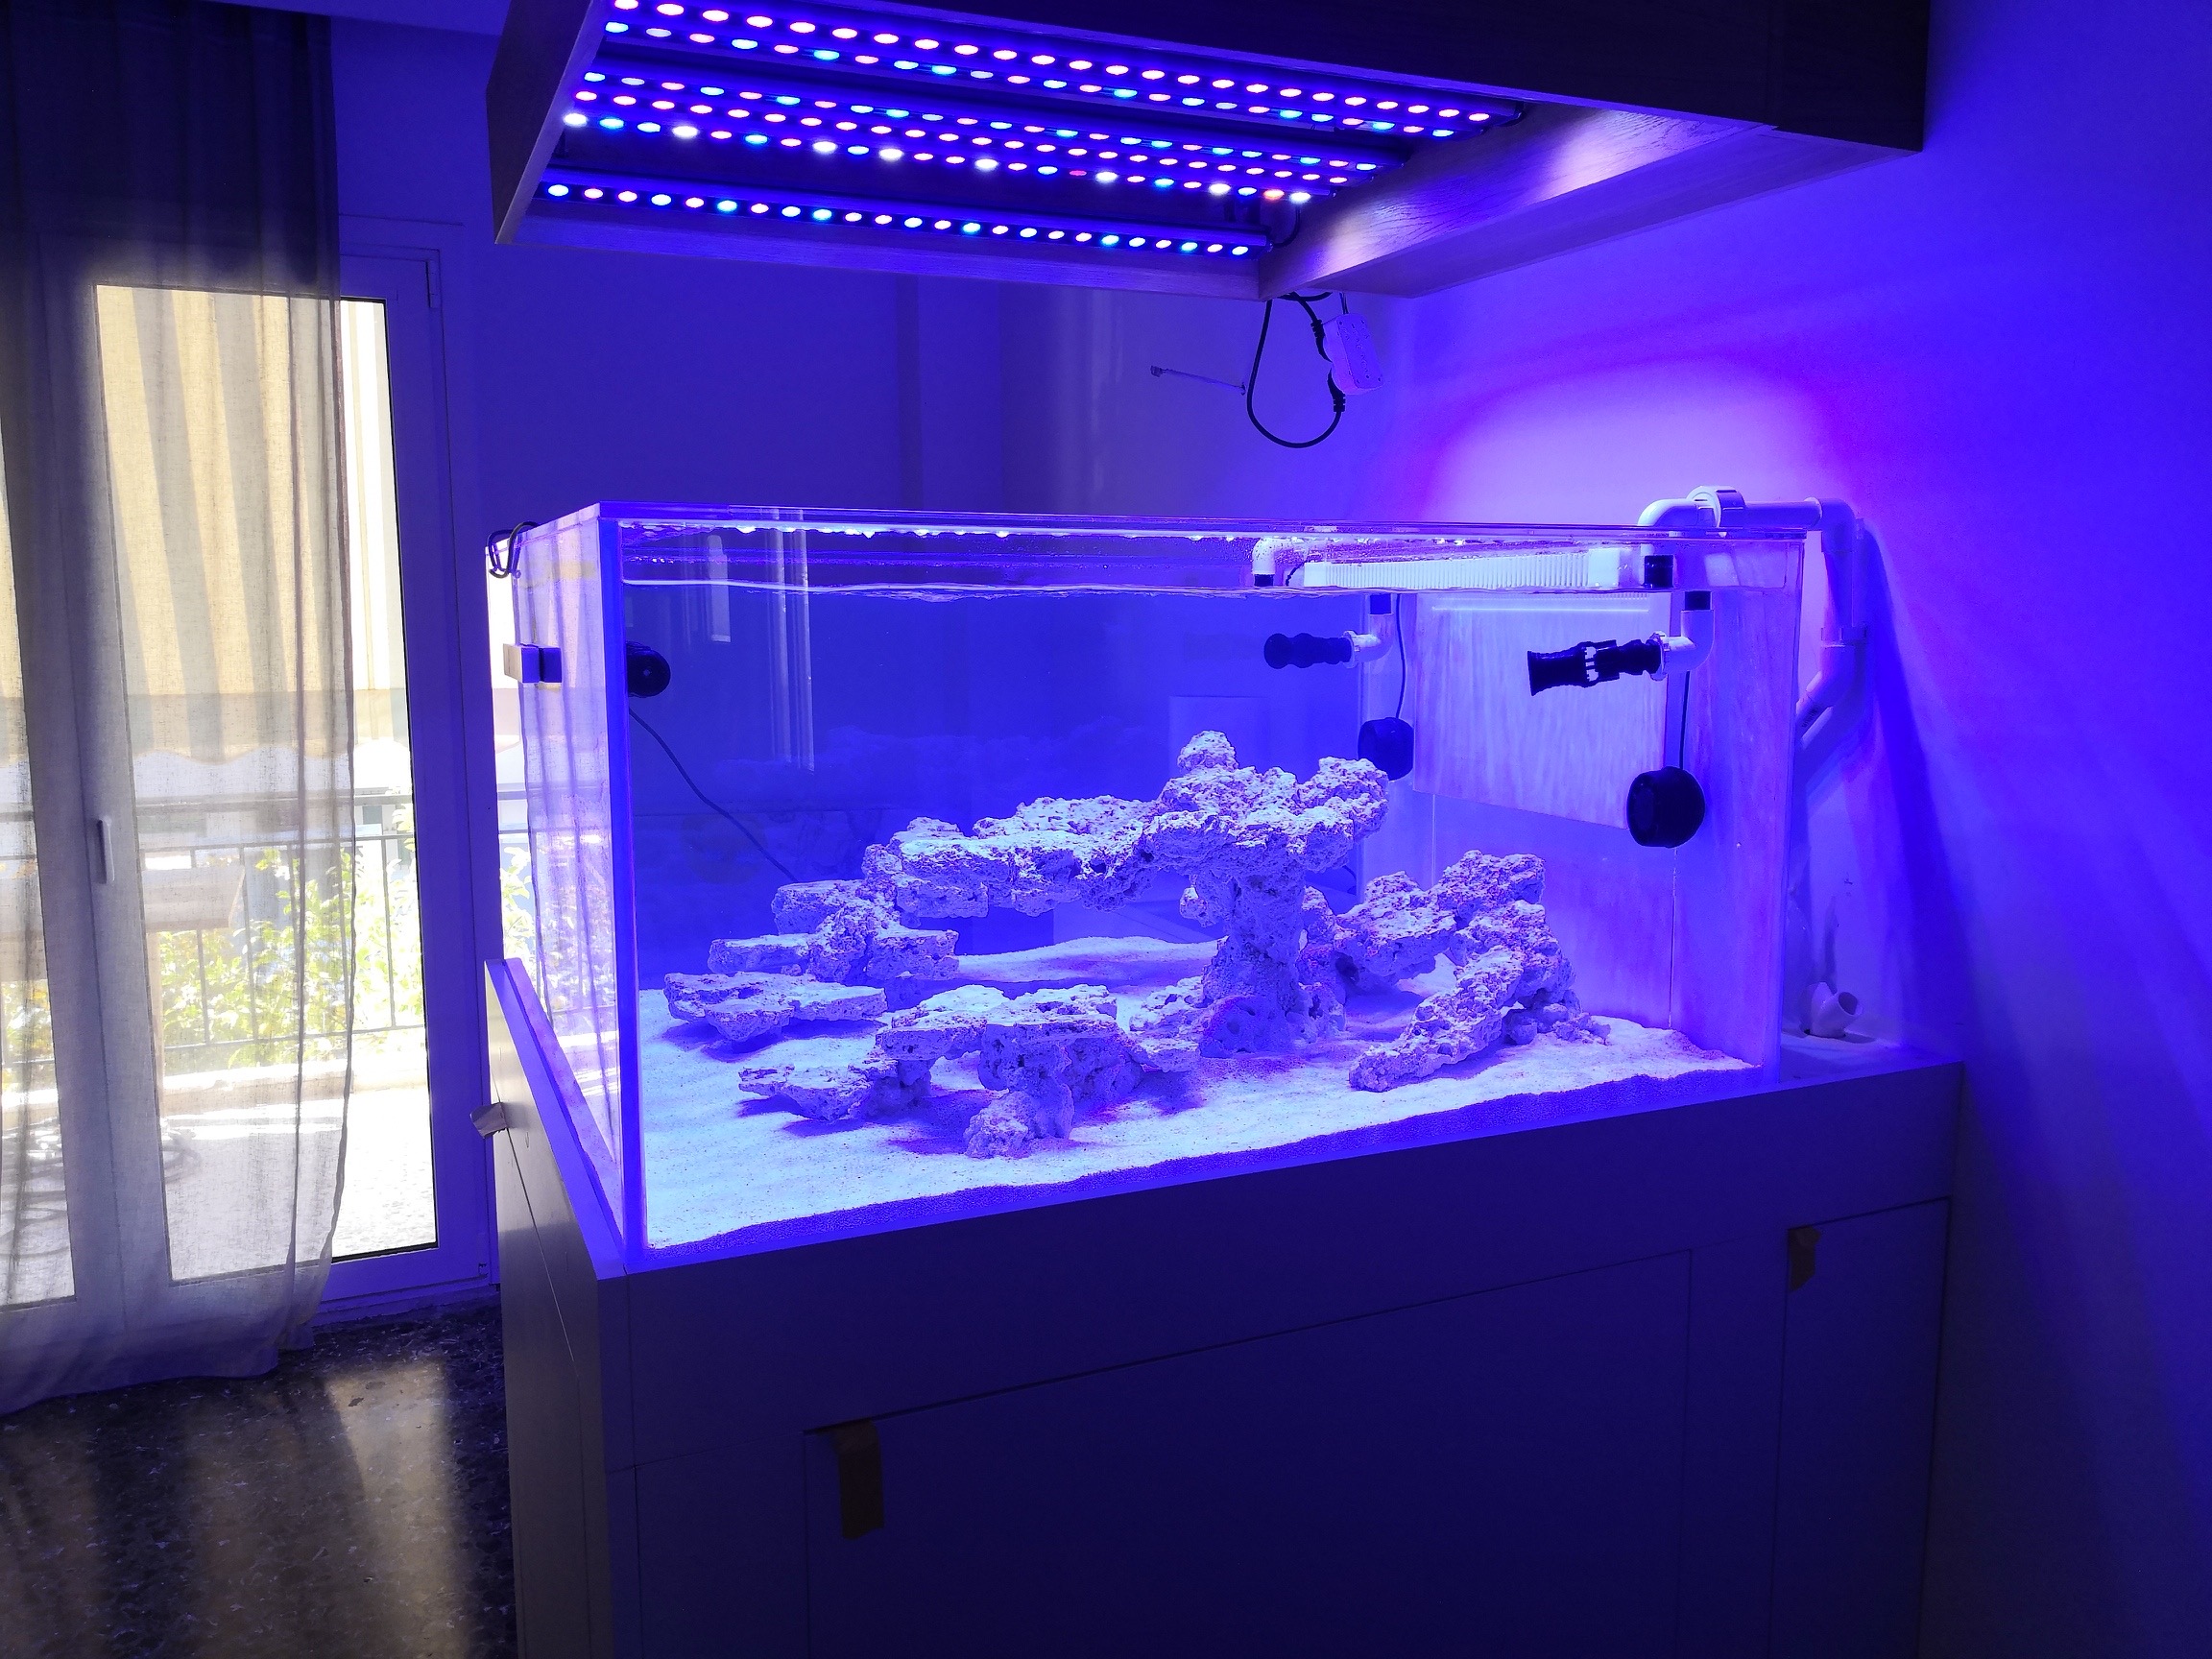 OR3-Best-Meerwasseraquarium-LED-Bar